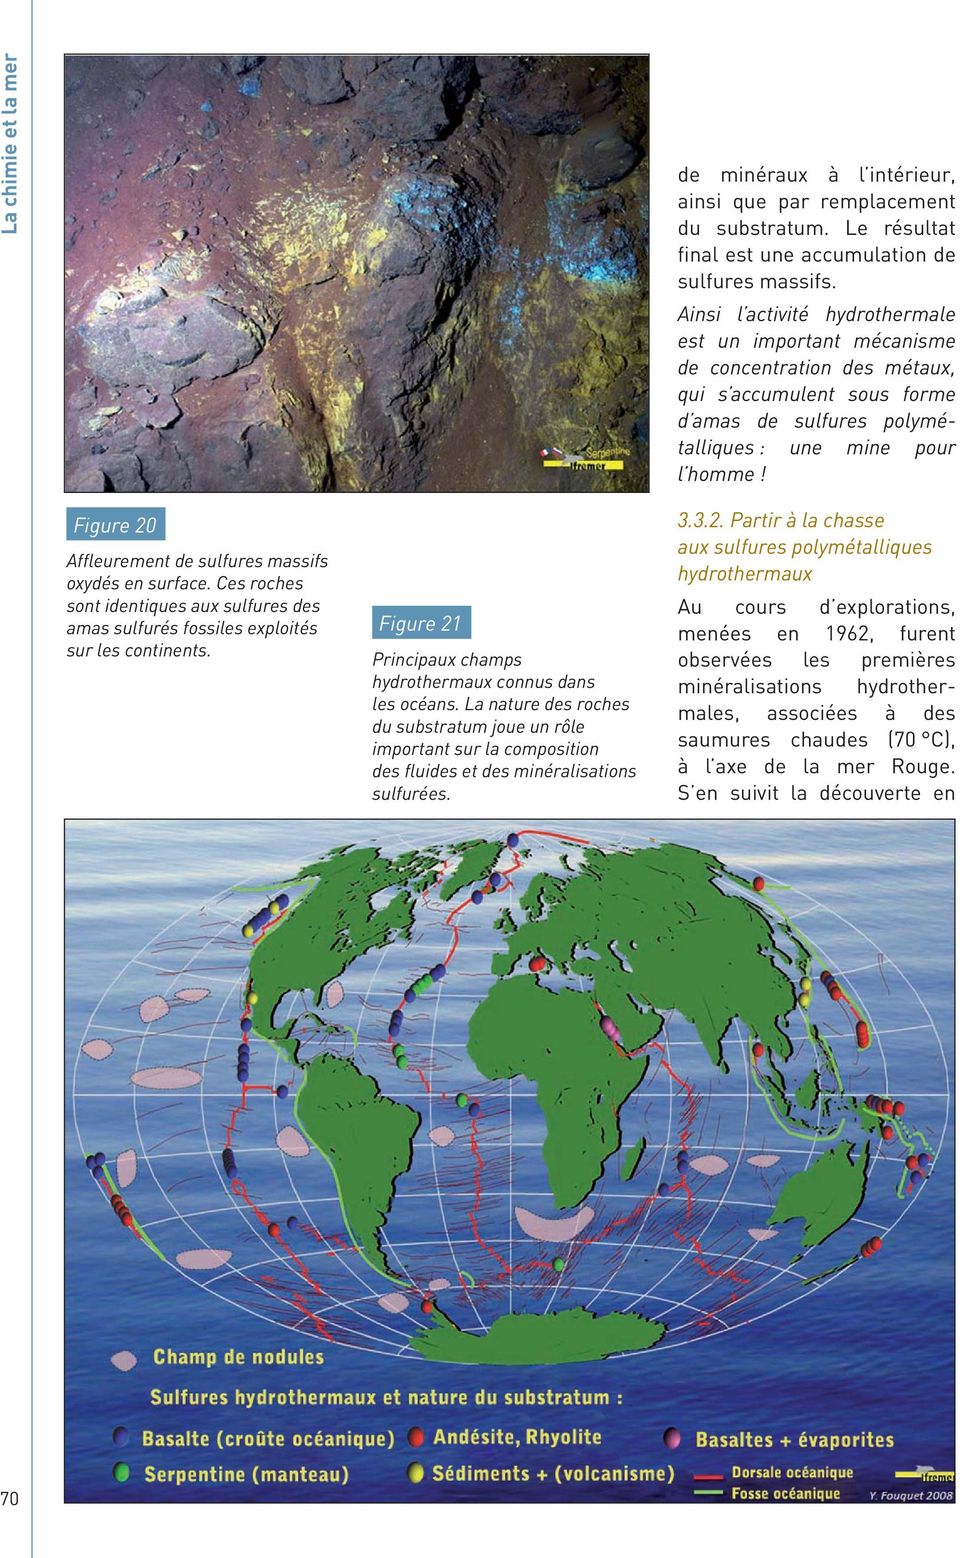 Figure 20 Affleurement de sulfures massifs oxydés en surface. Ces roches sont identiques aux sulfures des amas sulfurés fossiles exploités sur les continents.